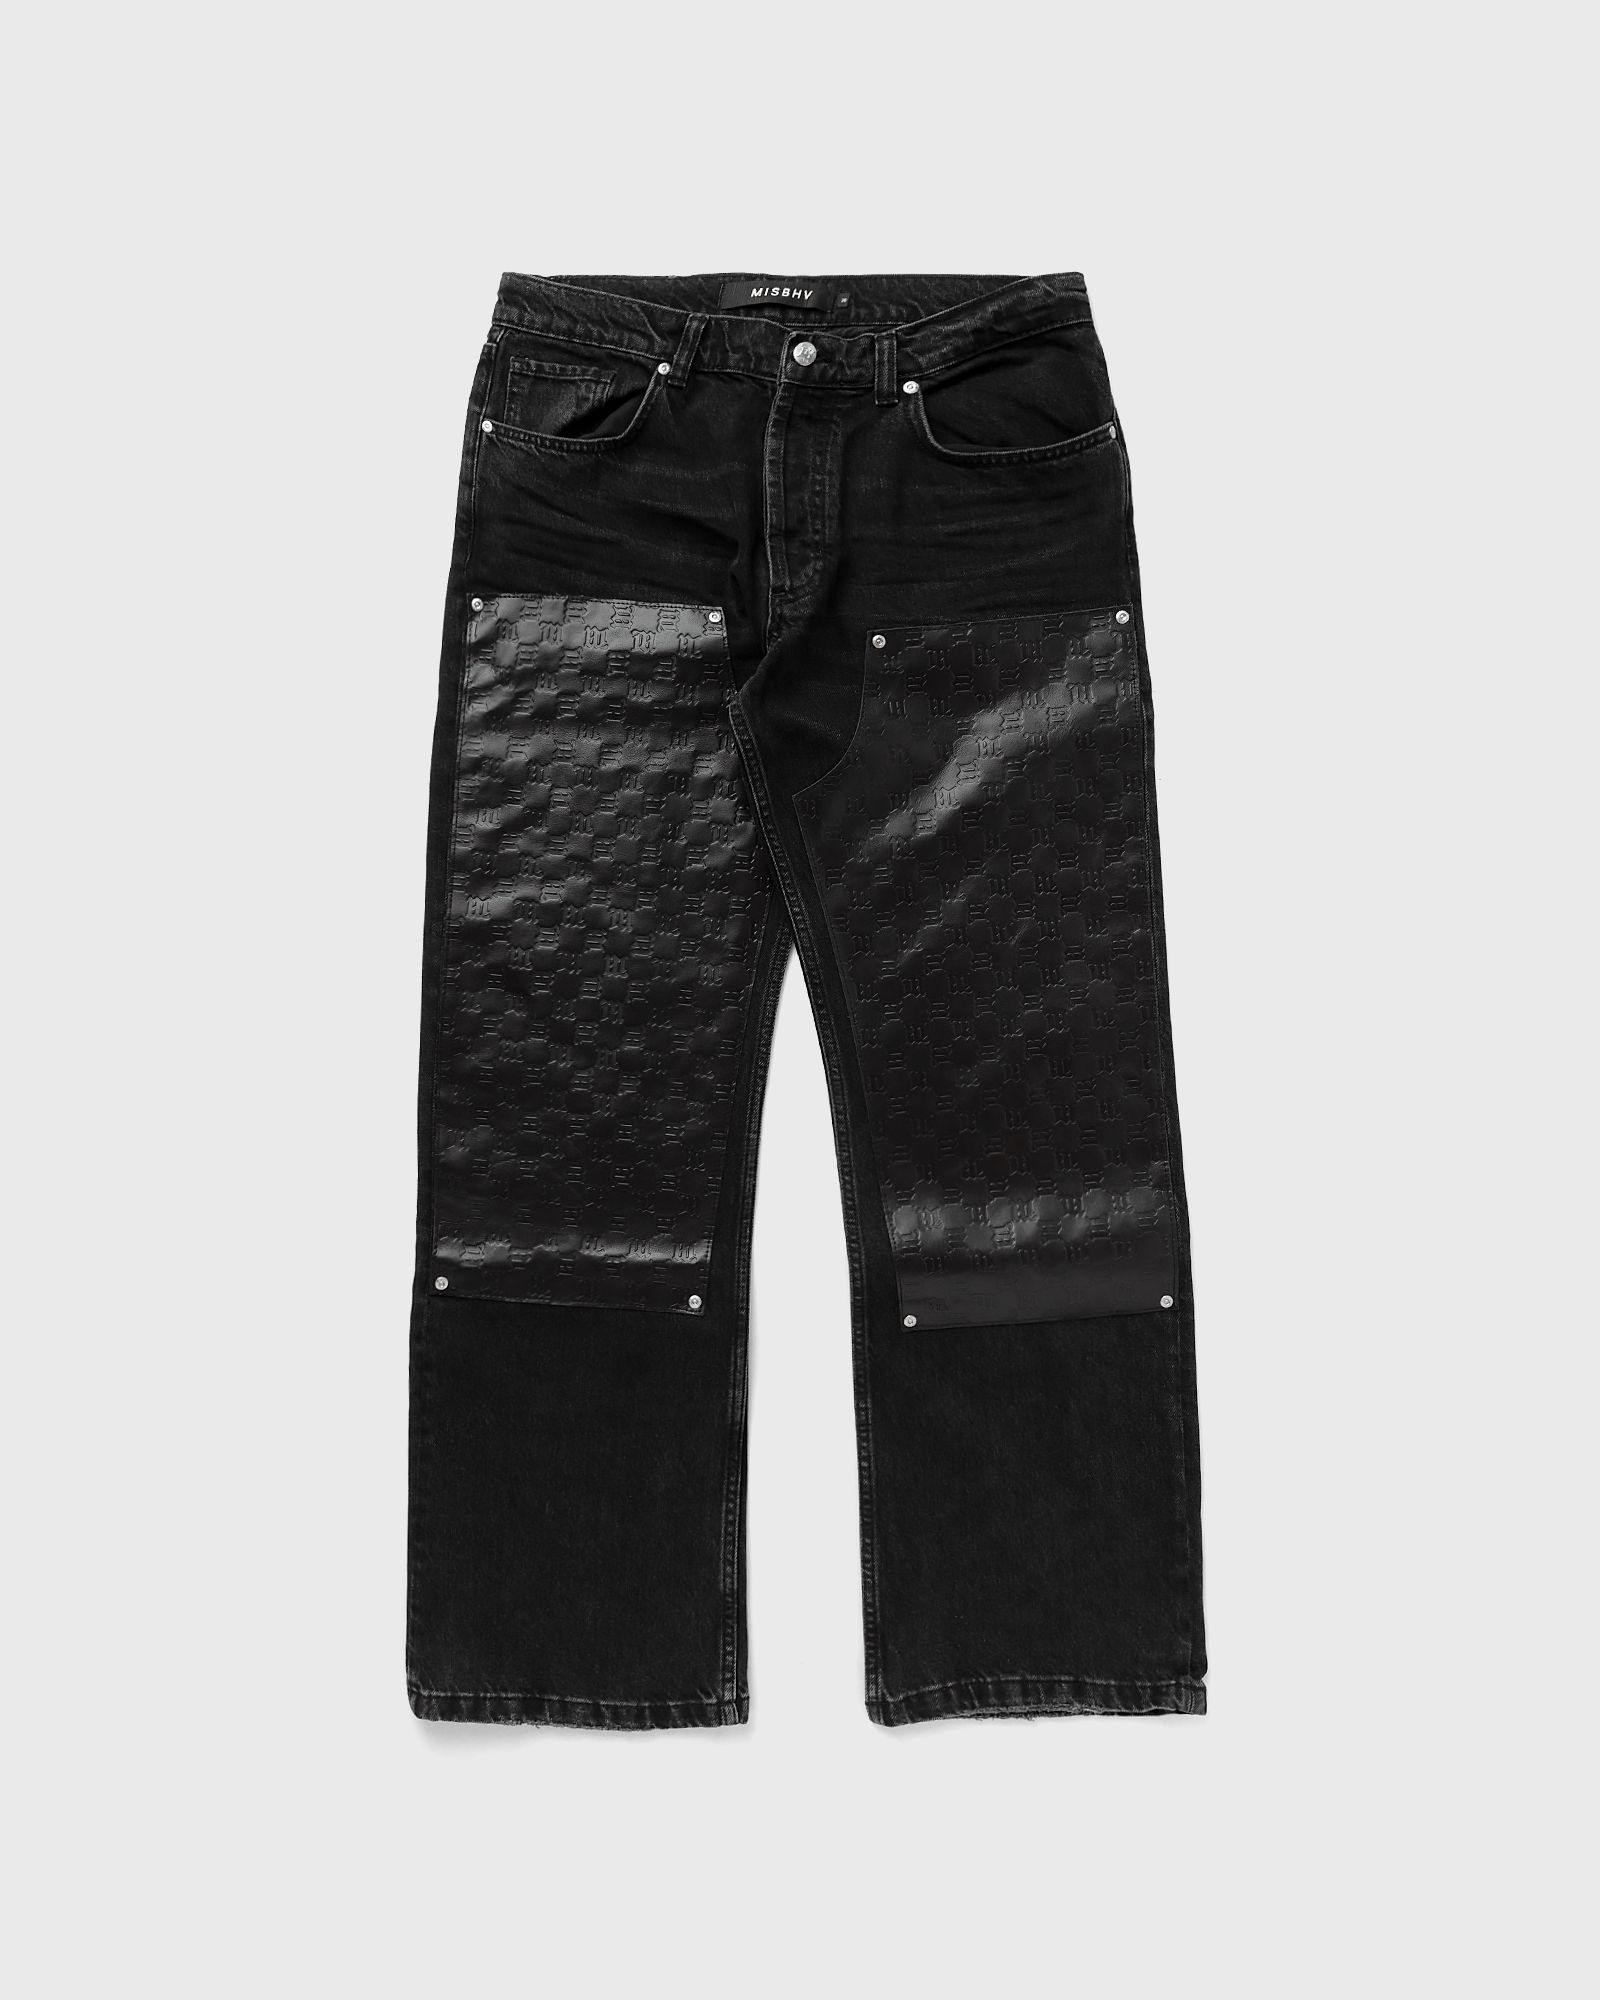 MISBHV - dark room carpenter trousers men jeans black in größe:l